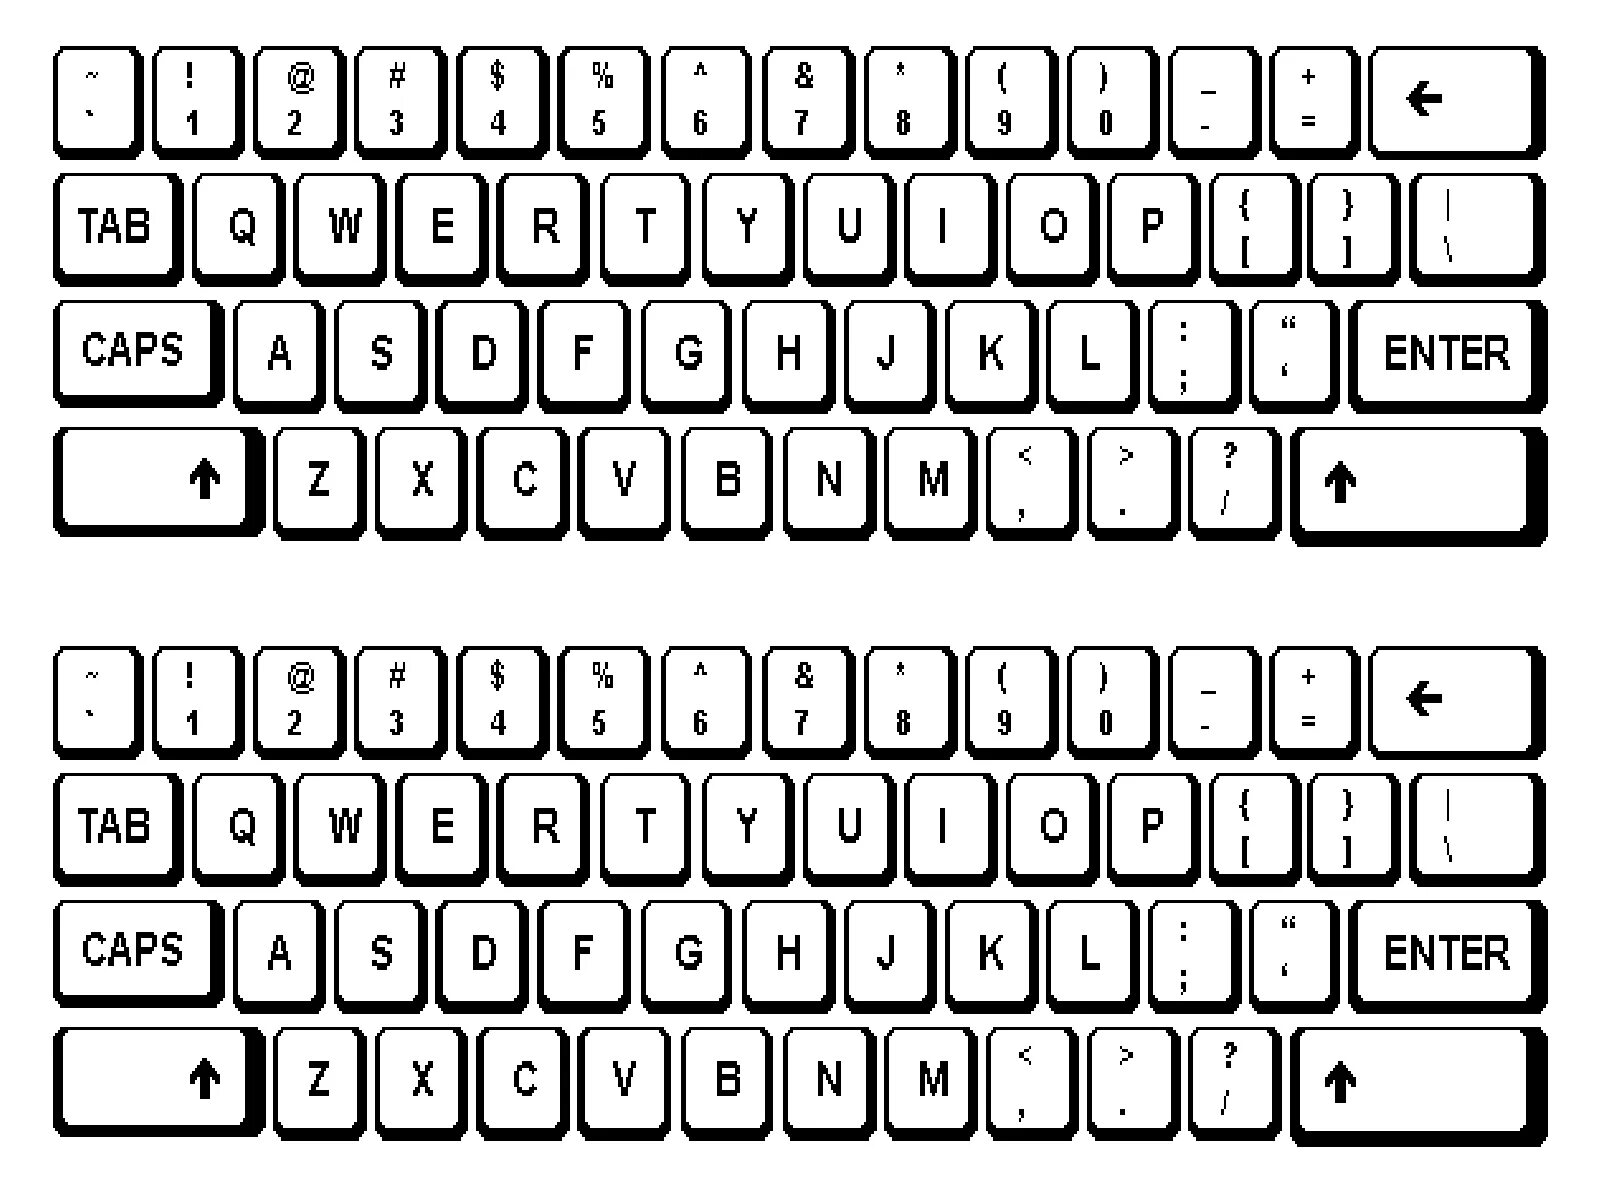 Раскраска красочная раскладка клавиатуры